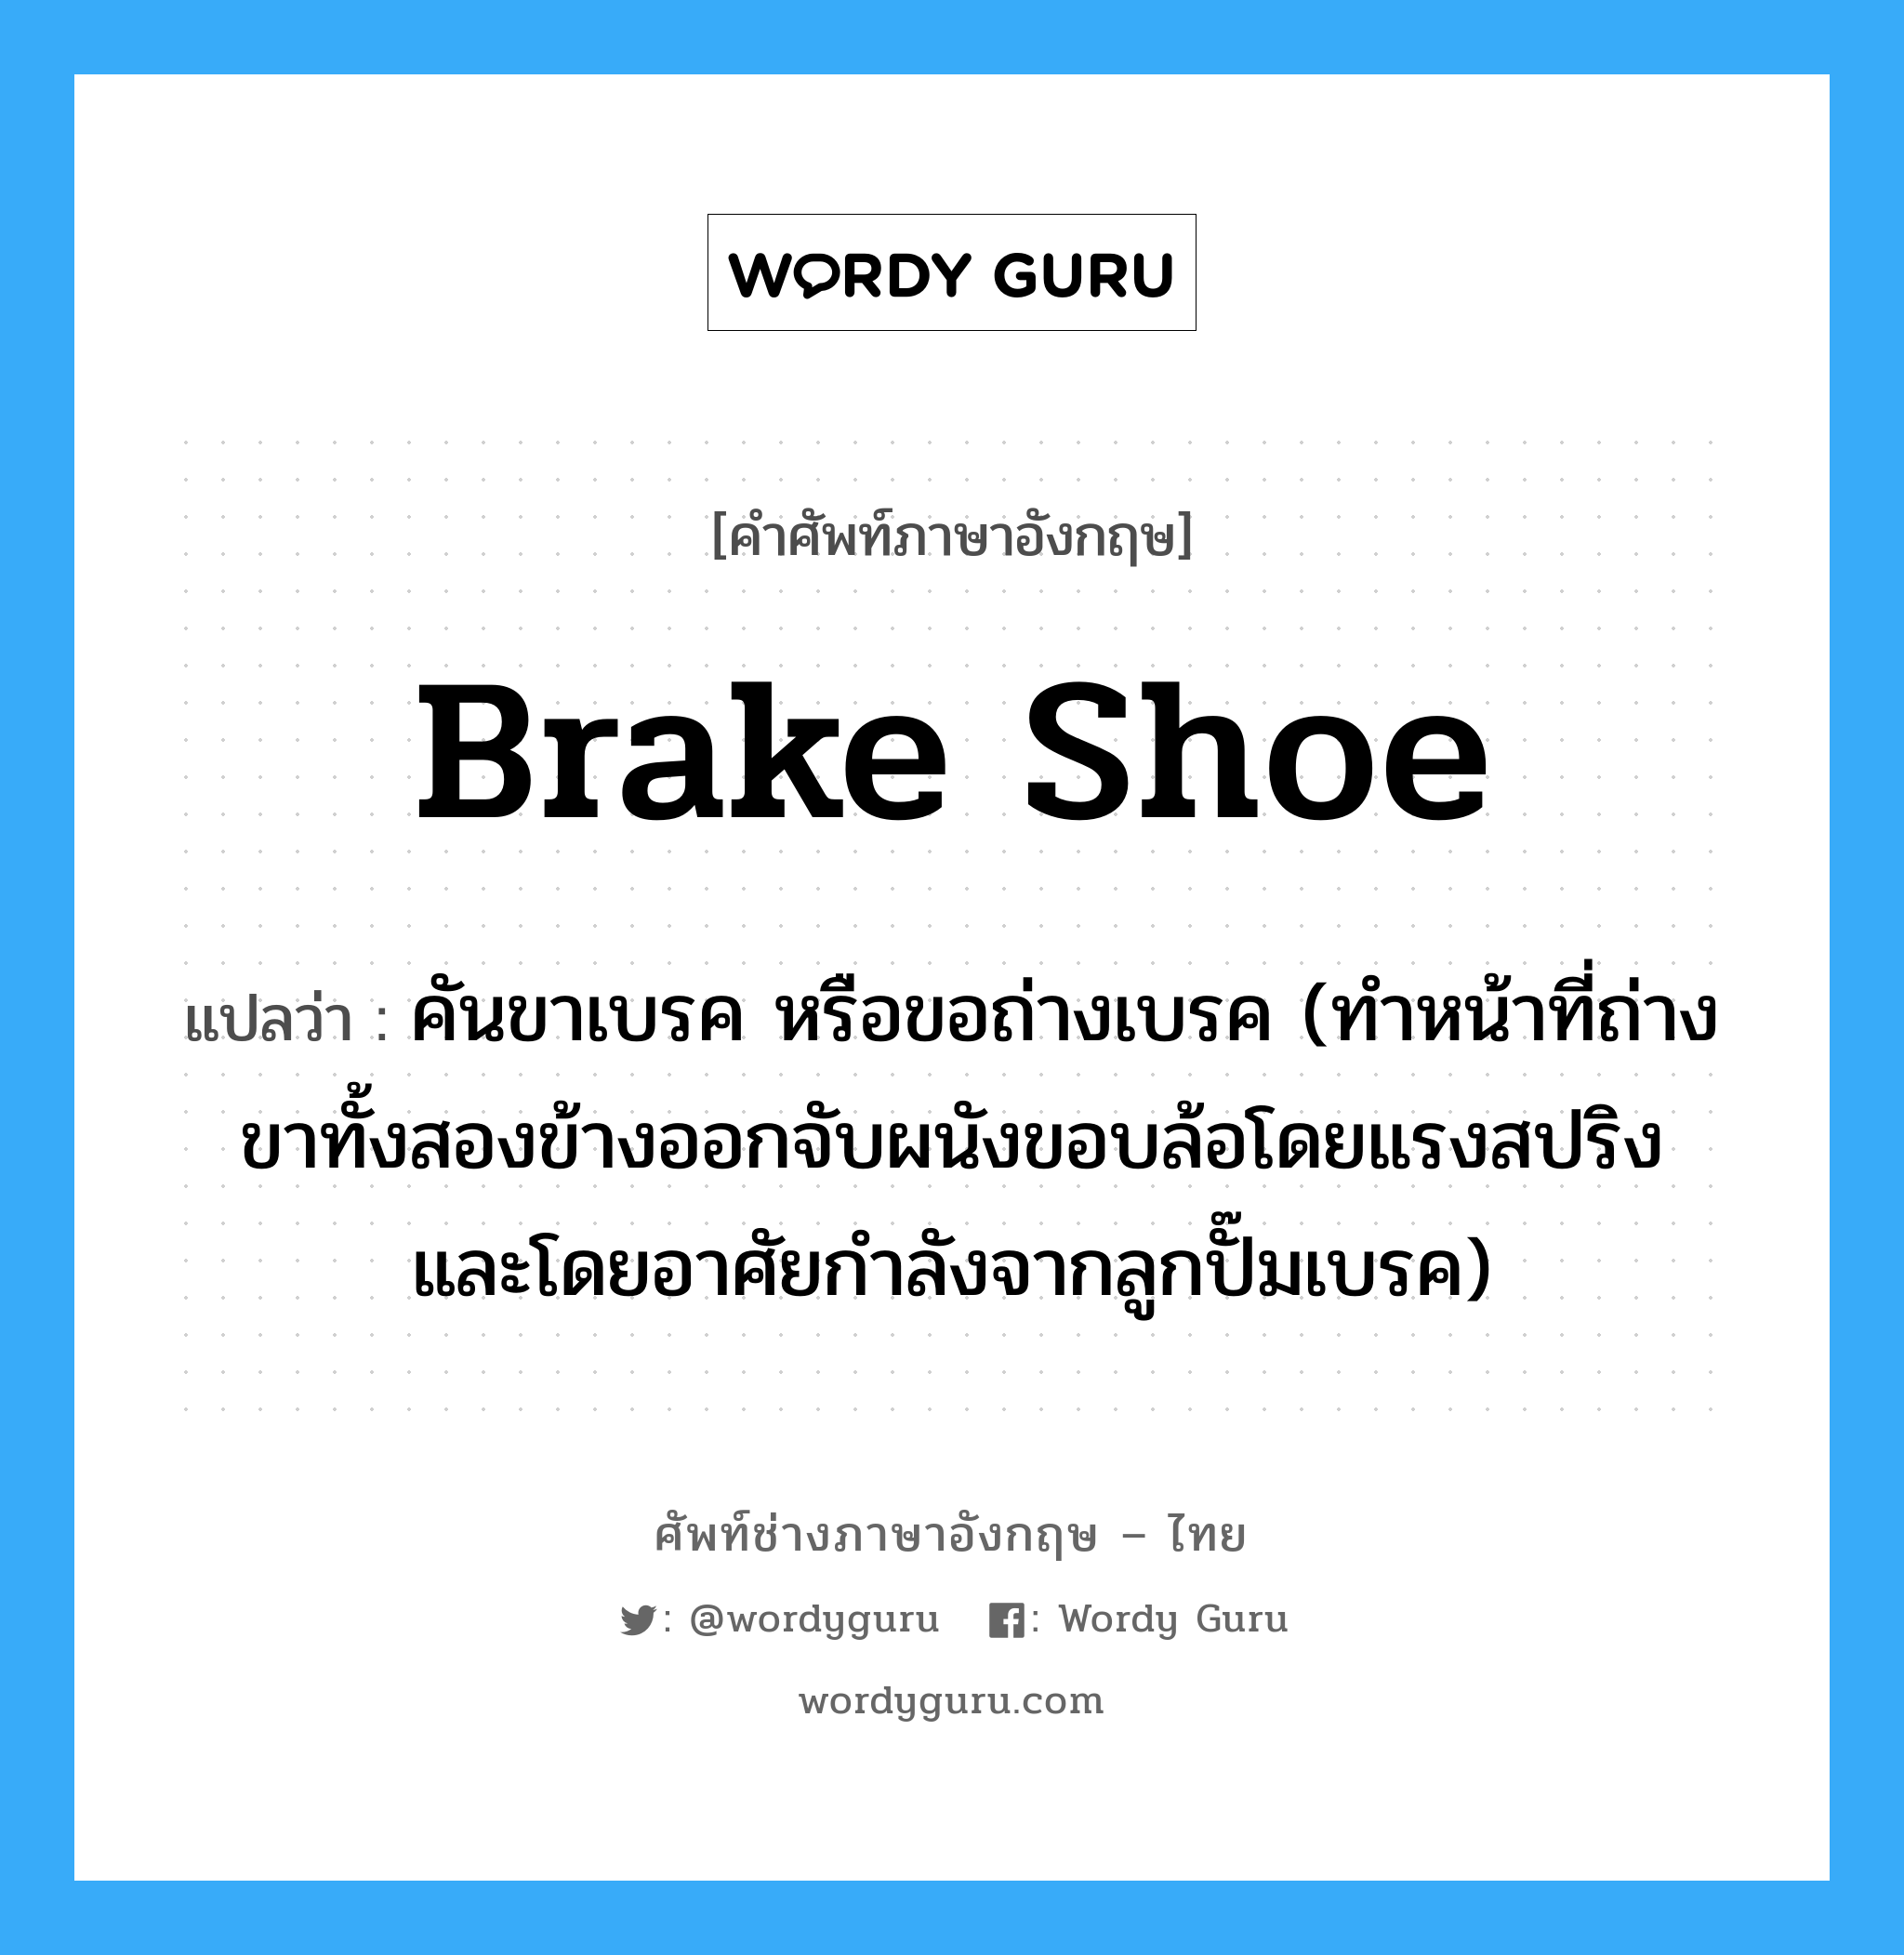 brake shoe แปลว่า?, คำศัพท์ช่างภาษาอังกฤษ - ไทย brake shoe คำศัพท์ภาษาอังกฤษ brake shoe แปลว่า คันขาเบรค หรือขอถ่างเบรค (ทำหน้าที่ถ่างขาทั้งสองข้างออกจับผนังขอบล้อโดยแรงสปริง และโดยอาศัยกำลังจากลูกปั๊มเบรค)